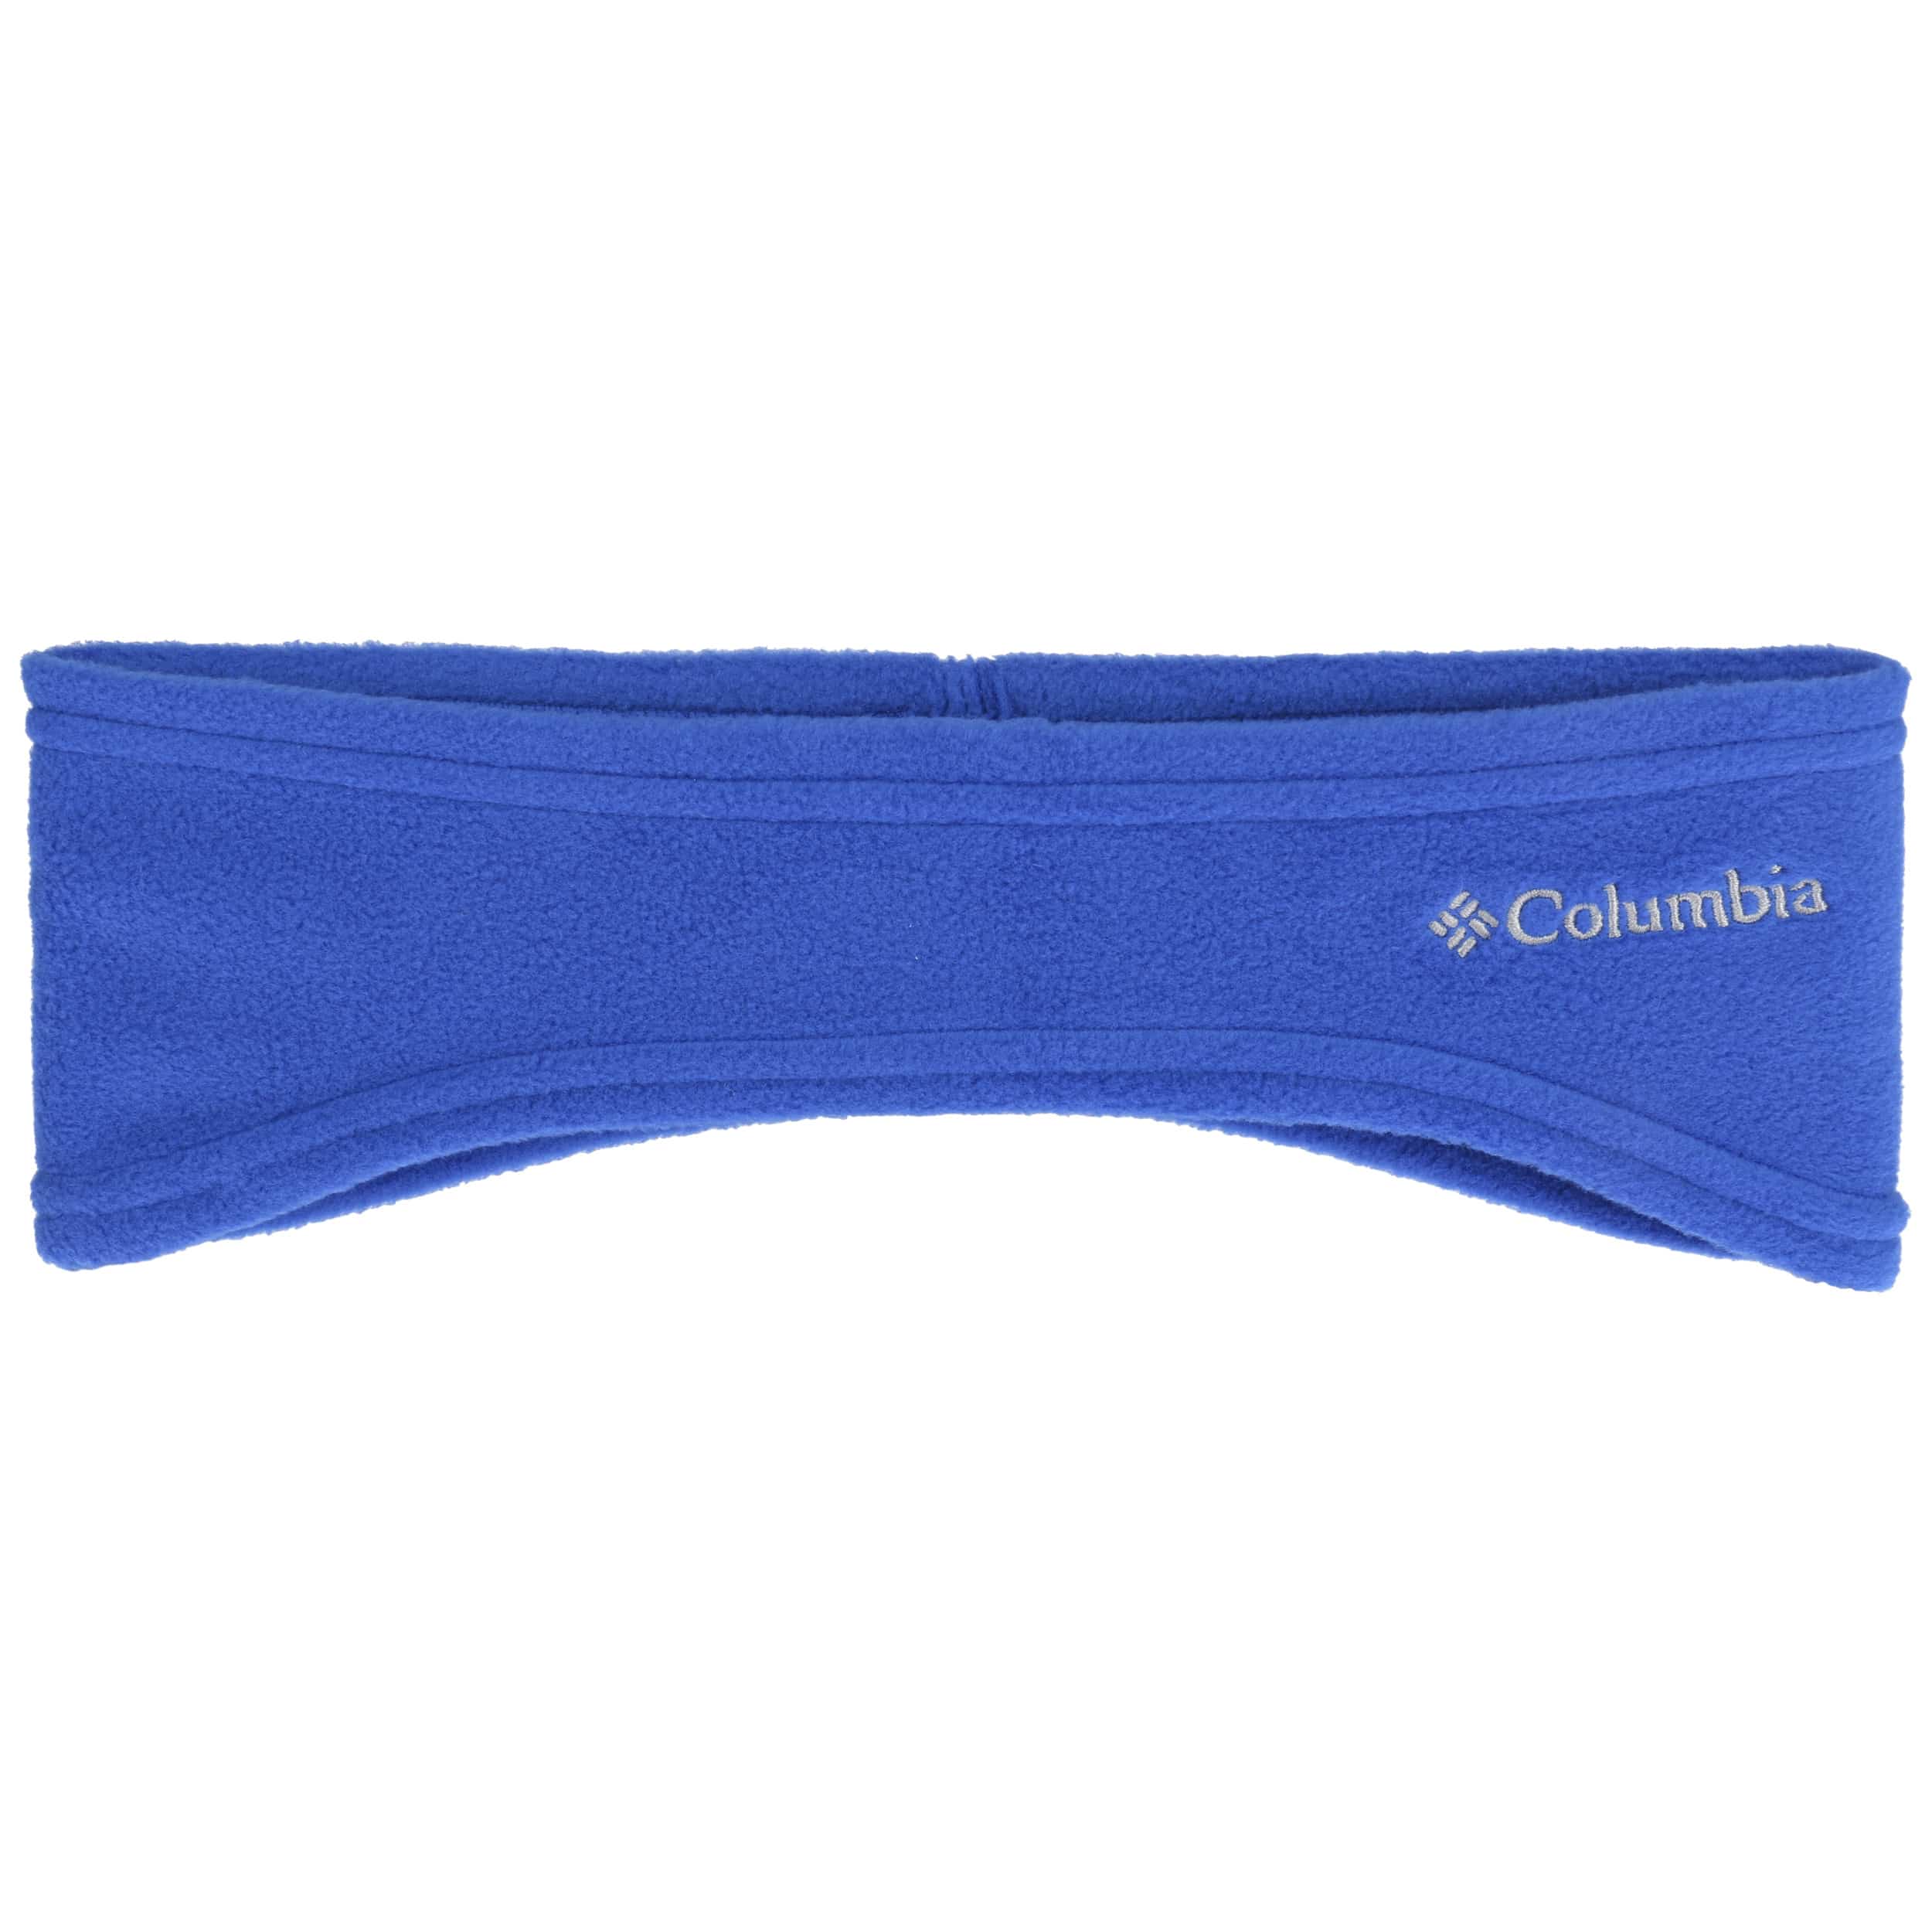 COLUMBIA HOMME Columbia COLUMBIA MESH™ - Casquette titanium/white